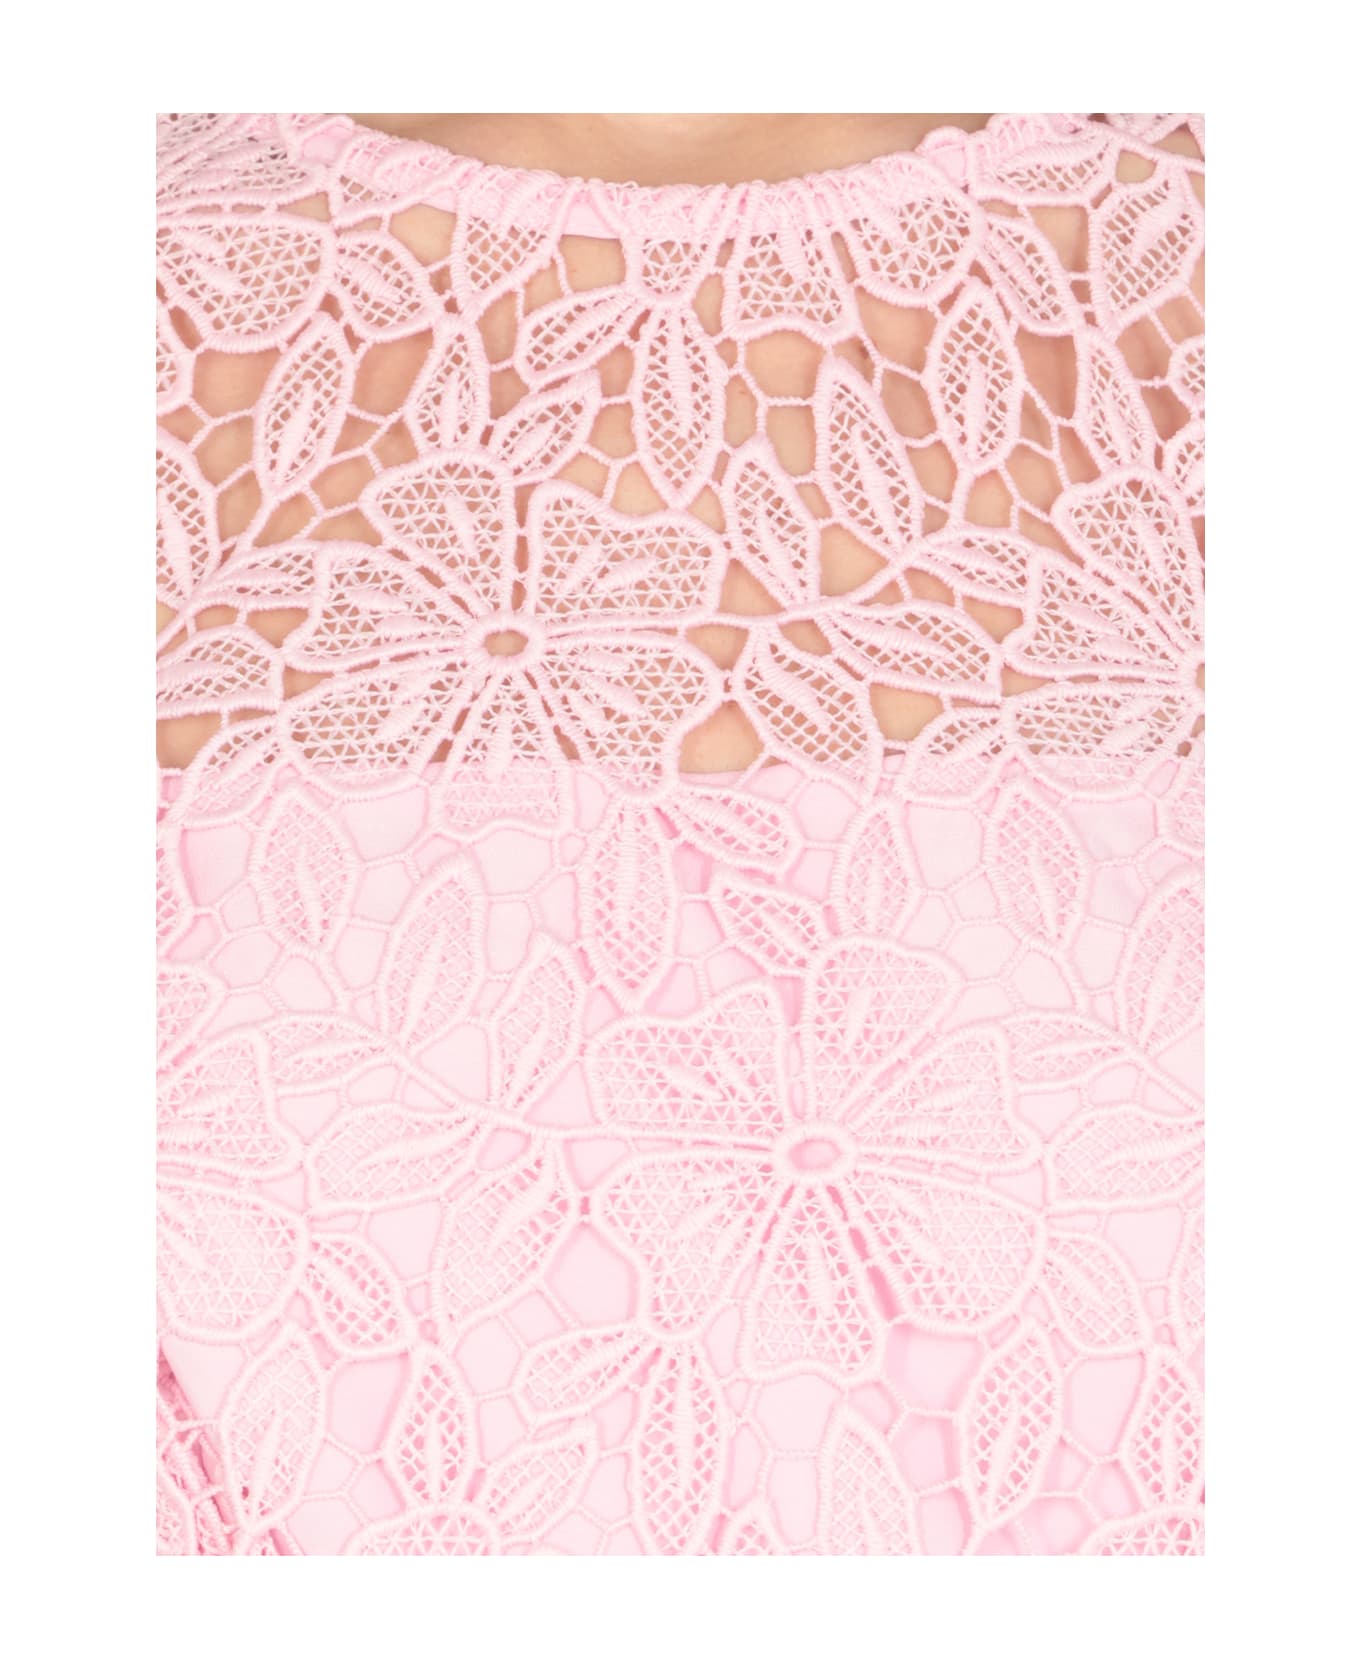 self-portrait Guipure Lace Dress - Pink